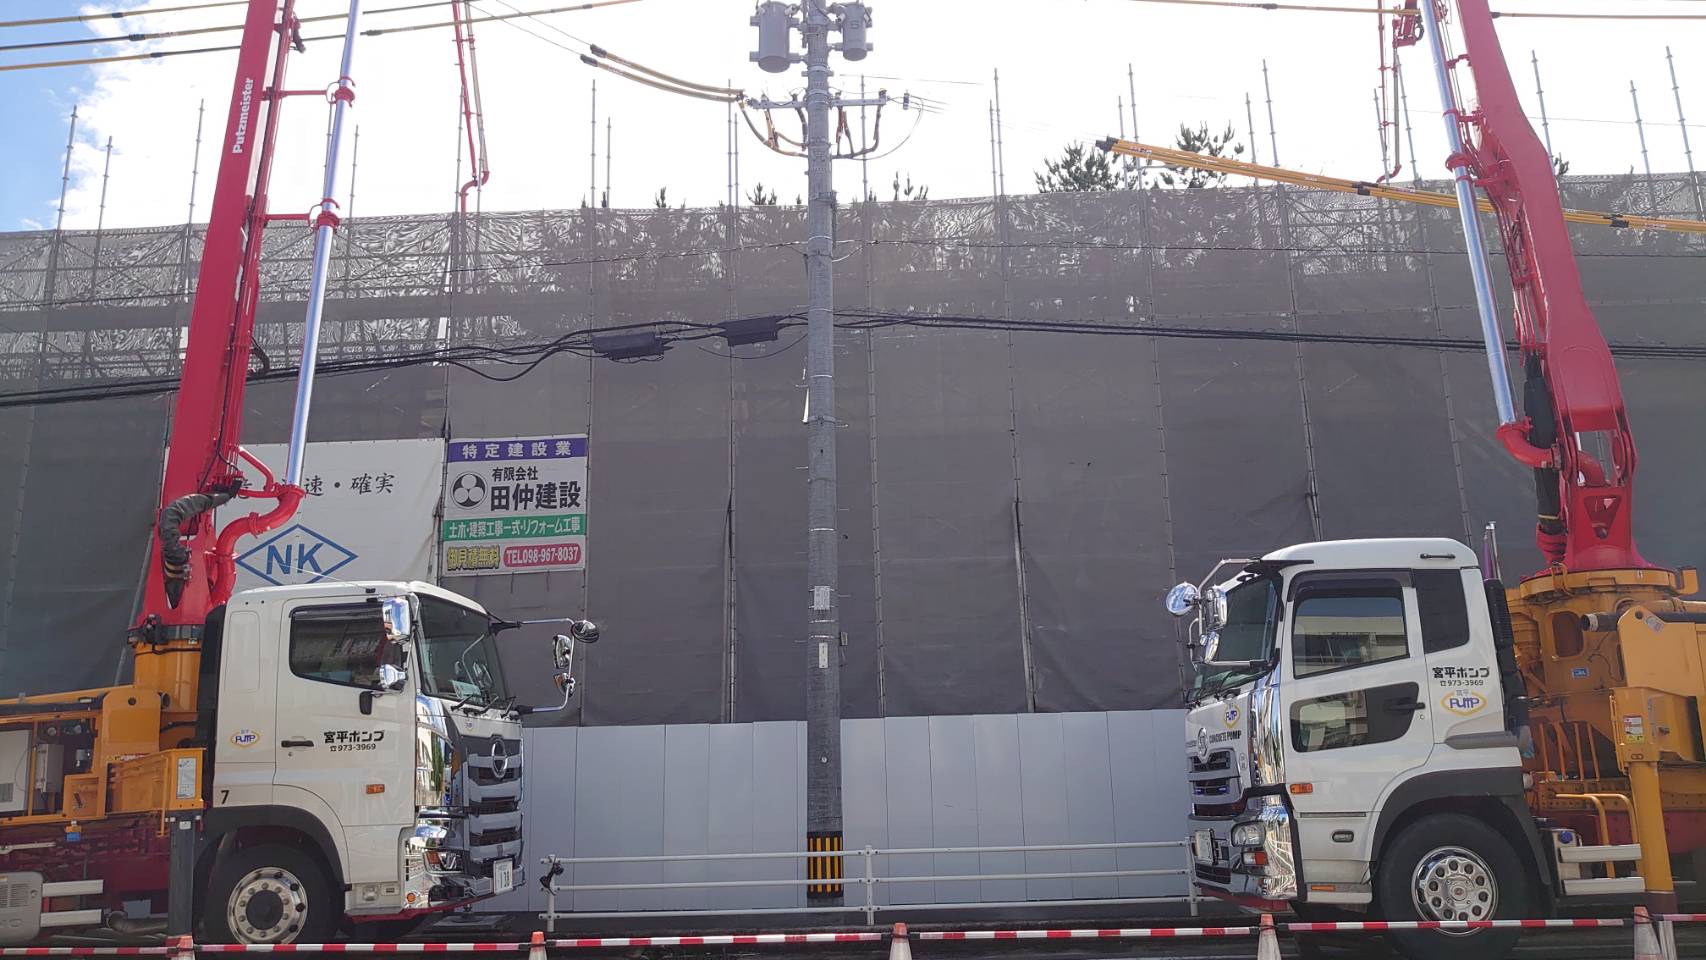 沖縄県コンクリート圧送安全協議会のブログにらめっこ